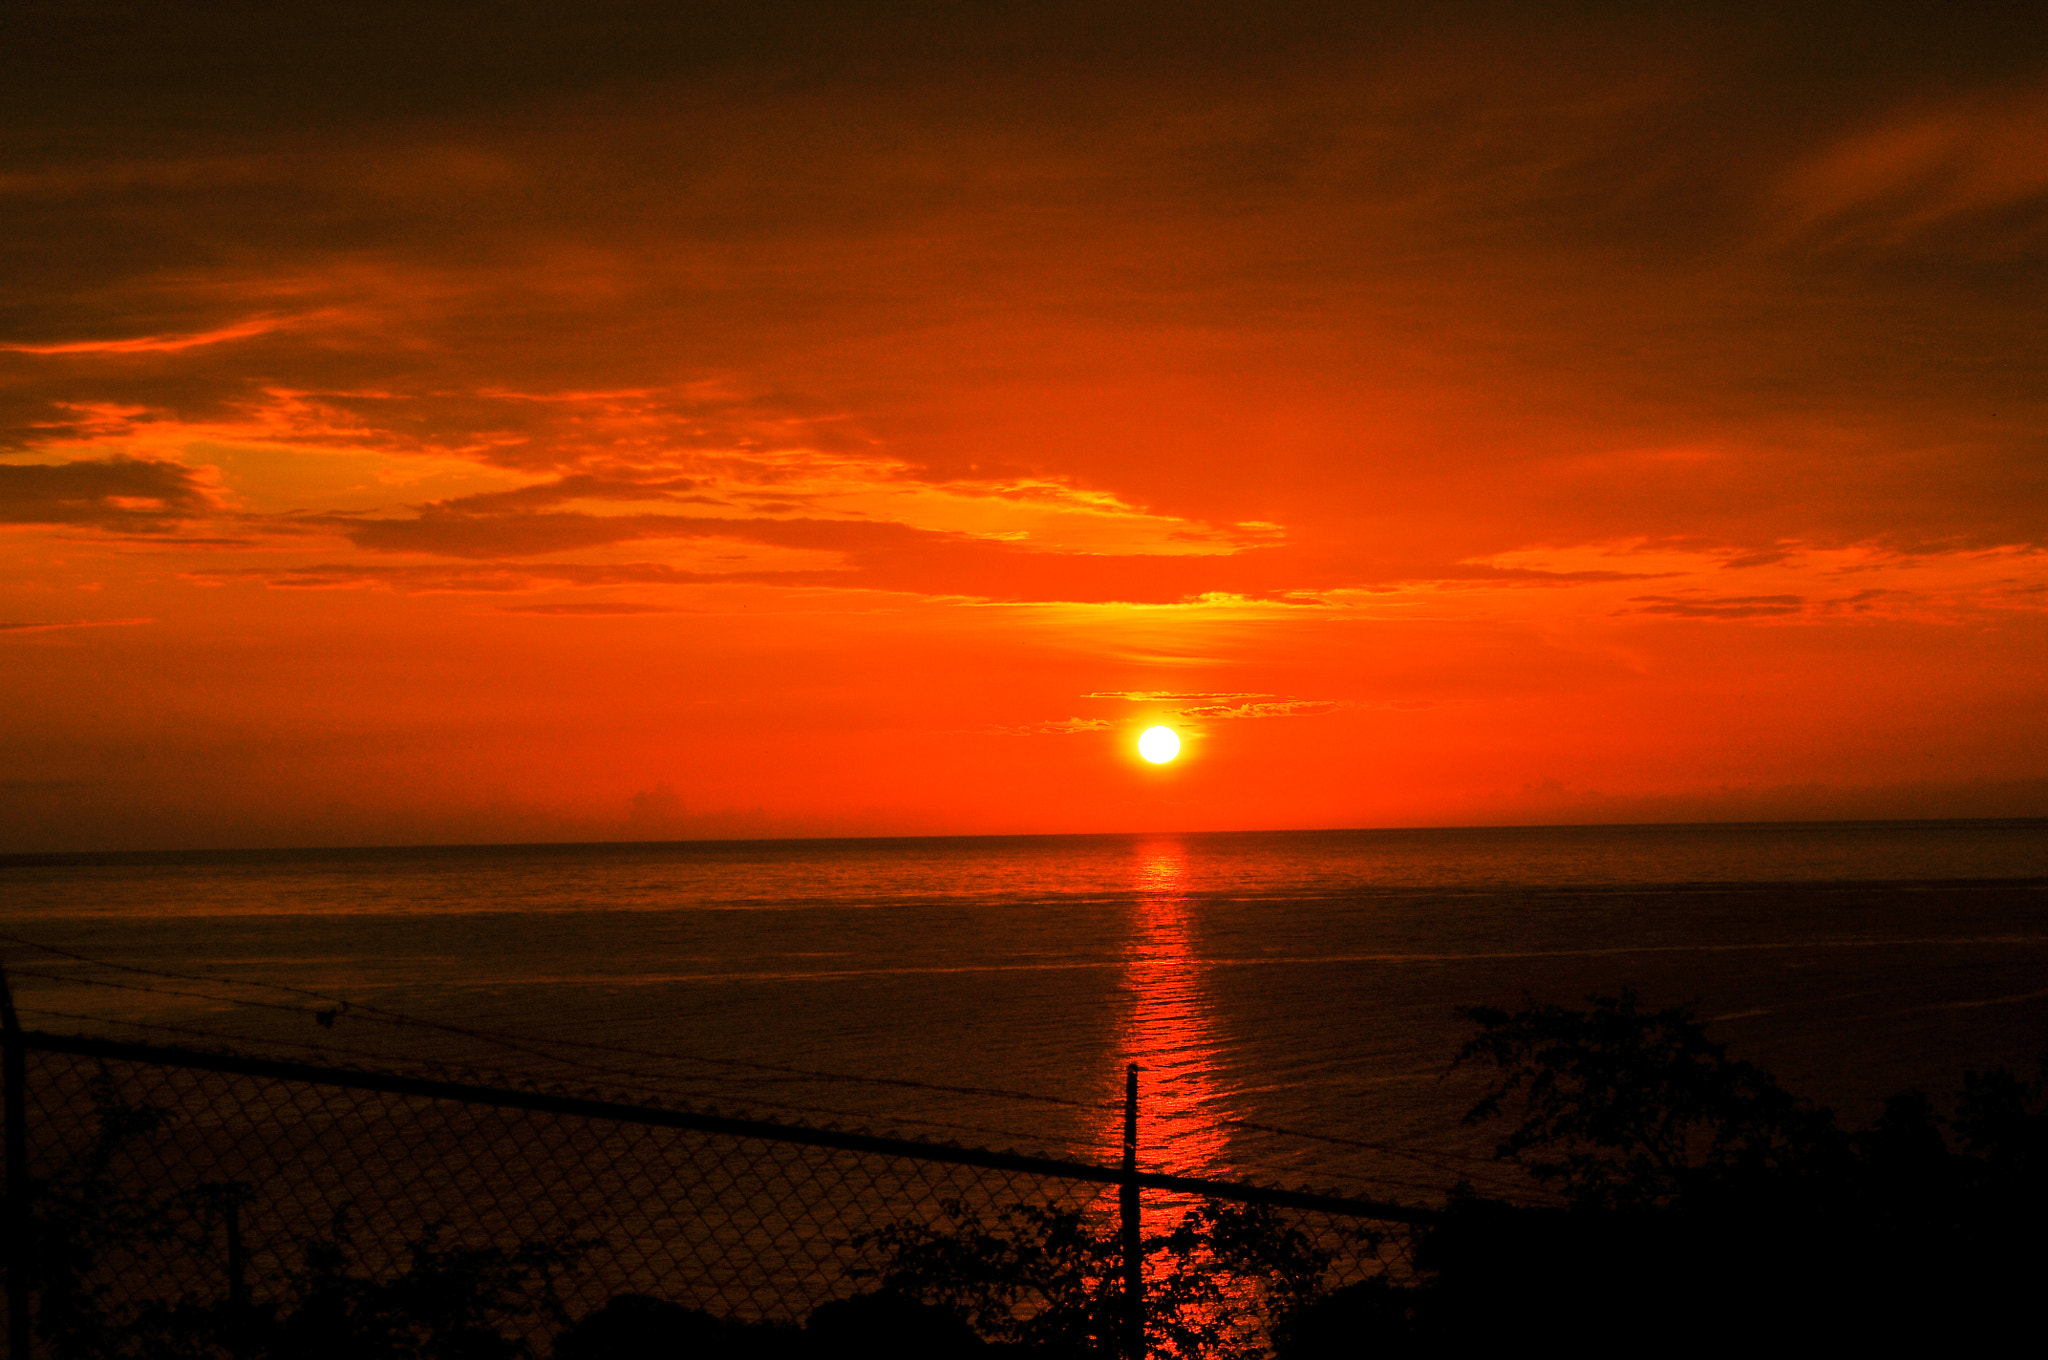 Nikon D300 + AF Zoom-Nikkor 28-80mm f/3.3-5.6G sample photo. Sunset in jamaica photography